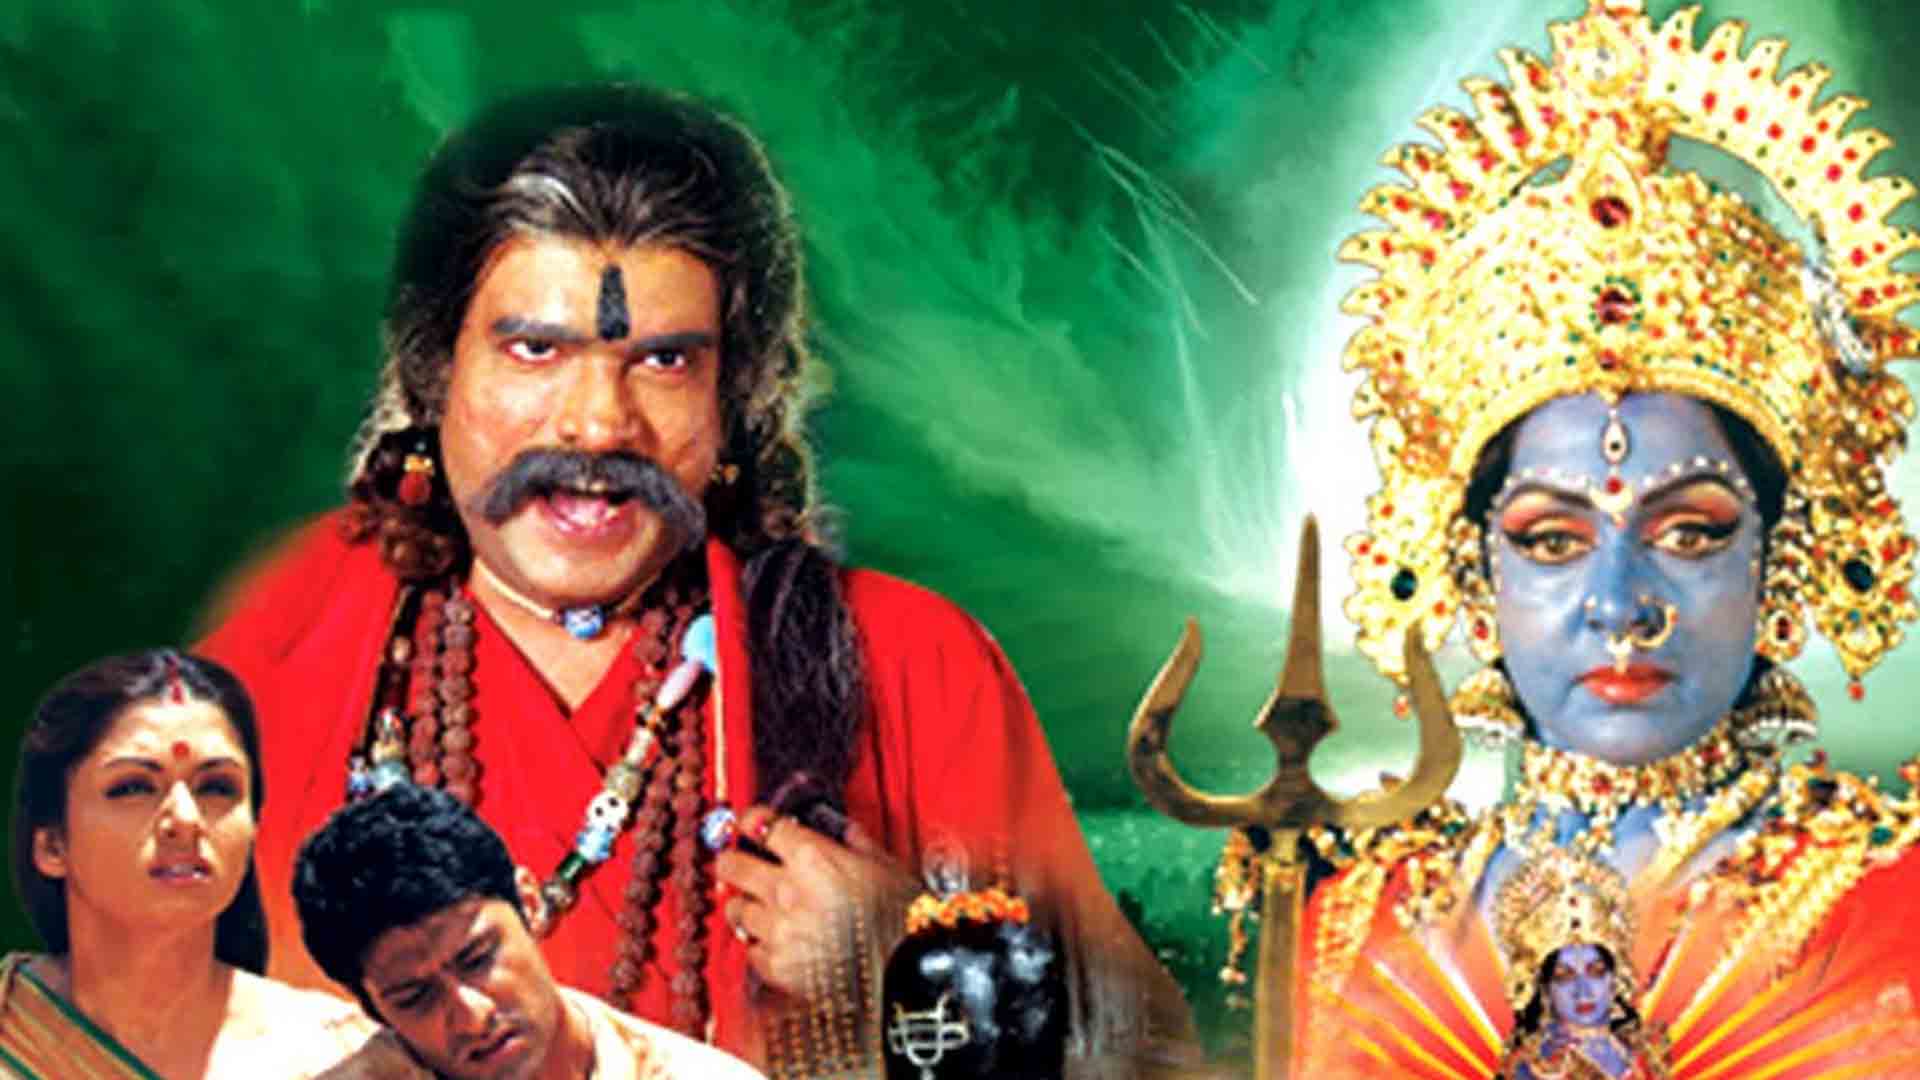 bhalobasa bhalobasa bengali full movie 2008